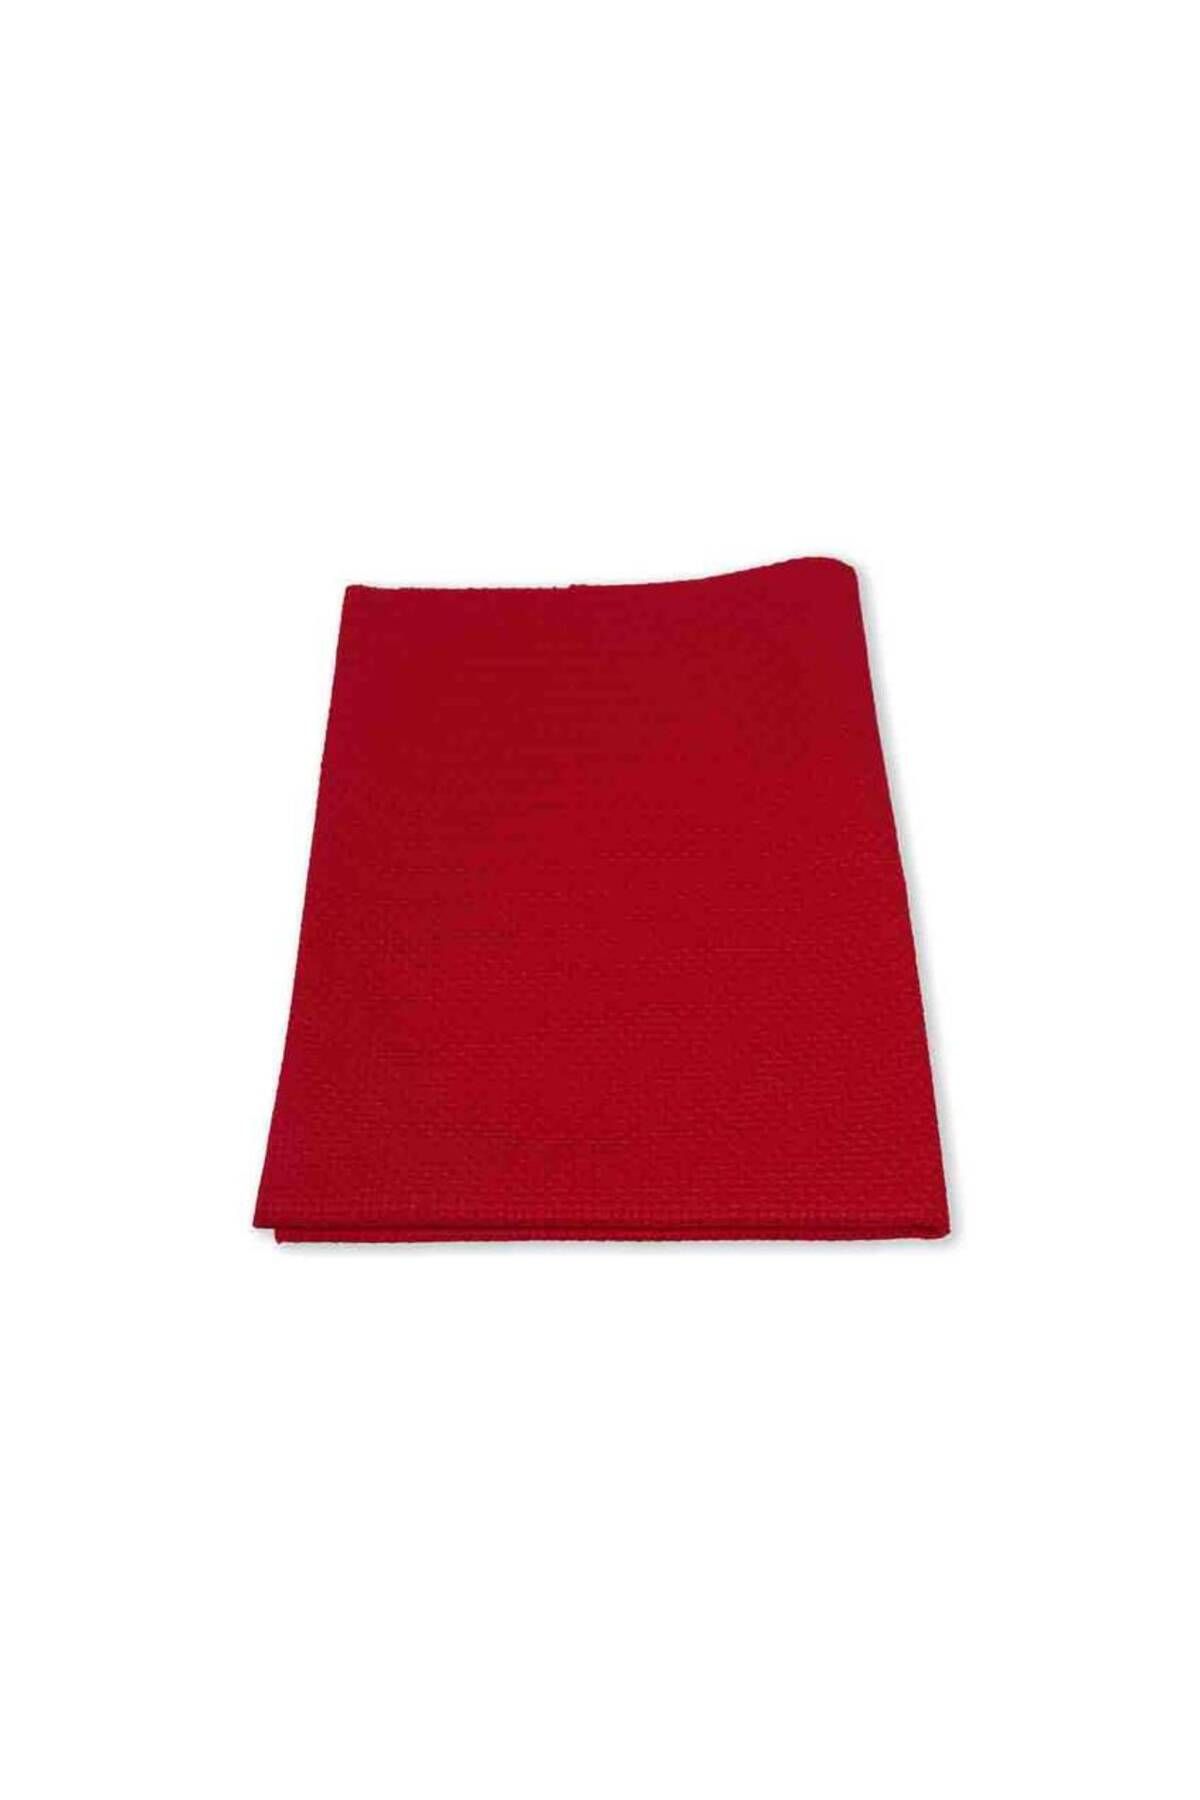 Simisso Etamin Kumaşı 50*70 cm | Kırmızı